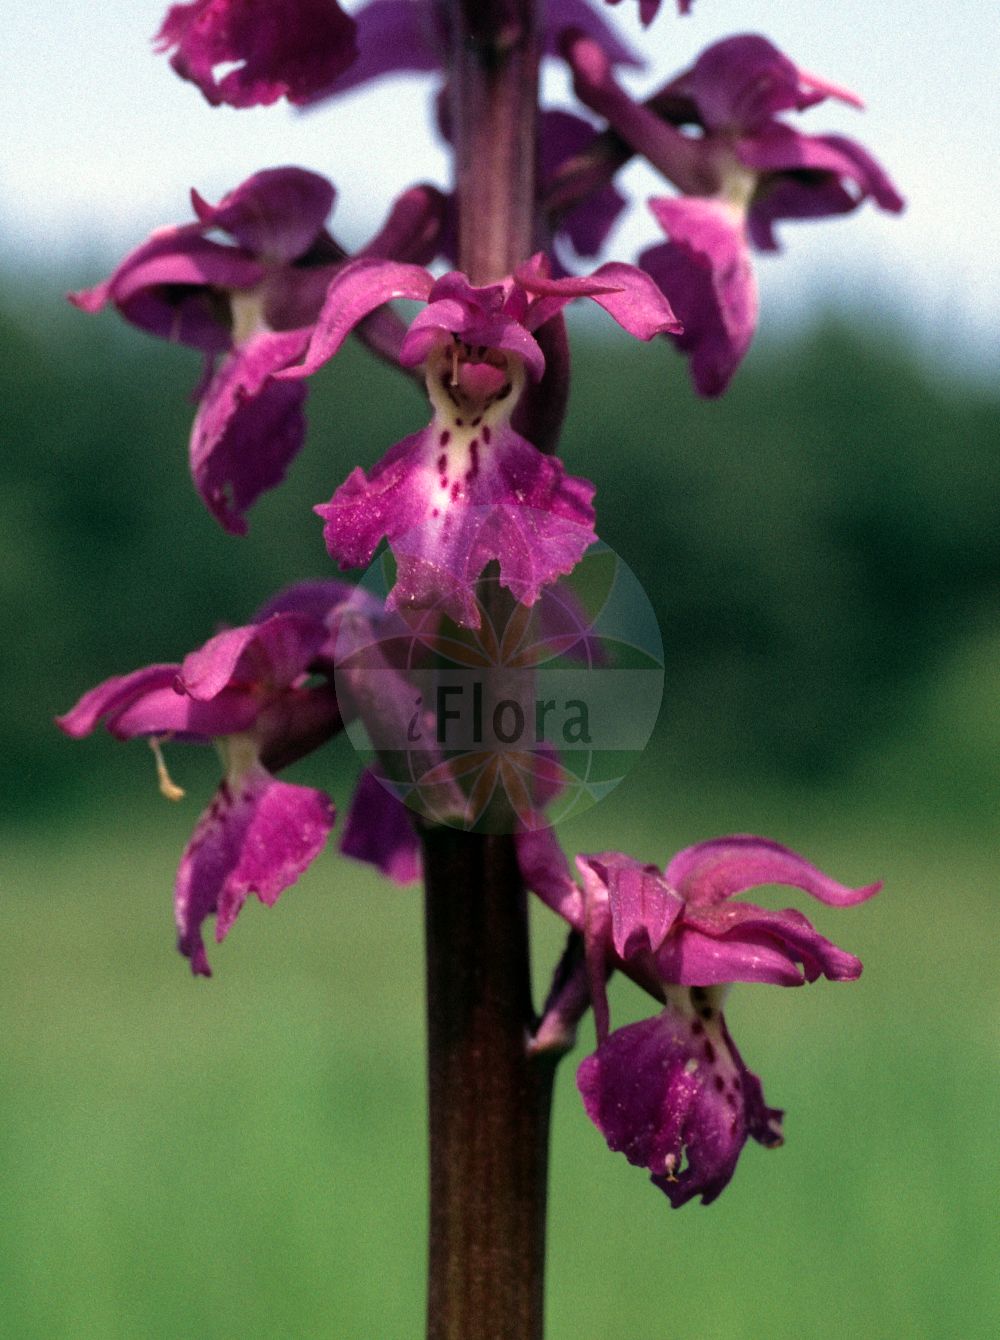 Foto von Orchis mascula (Männliches Knabenkraut - Early-purple Orchid). ---- Photo of Orchis mascula (Männliches Knabenkraut - Early-purple Orchid).(Orchis mascula,Männliches Knabenkraut,Early-purple Orchid,Androrchis mascula,Orchis mascula,Orchis morio var. mascula,Maennliches Knabenkraut,Kuckucks-Knabenkraut,Early-purple Orchid,Blue Butcher,Blue Butcher Orchid,Male Orchid,Orchis,Knabenkraut,Orchidaceae,Knabenkrautgewächse,Orchid family)